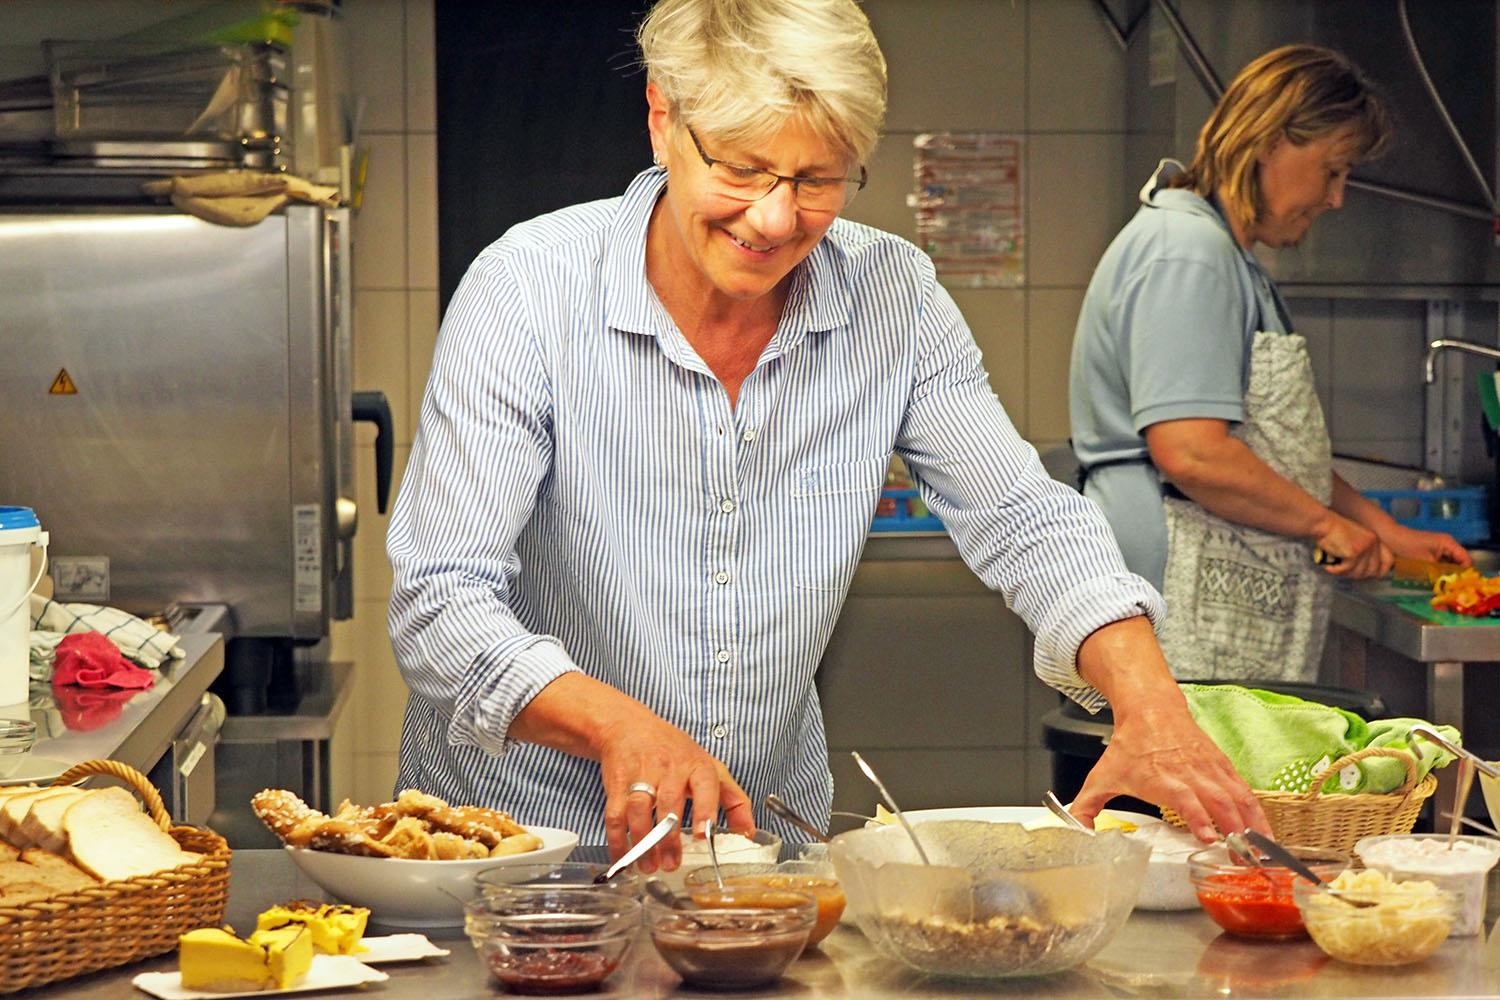 Eine Frau mit kurzen blonden Haaren und Brille steht in einer Küche